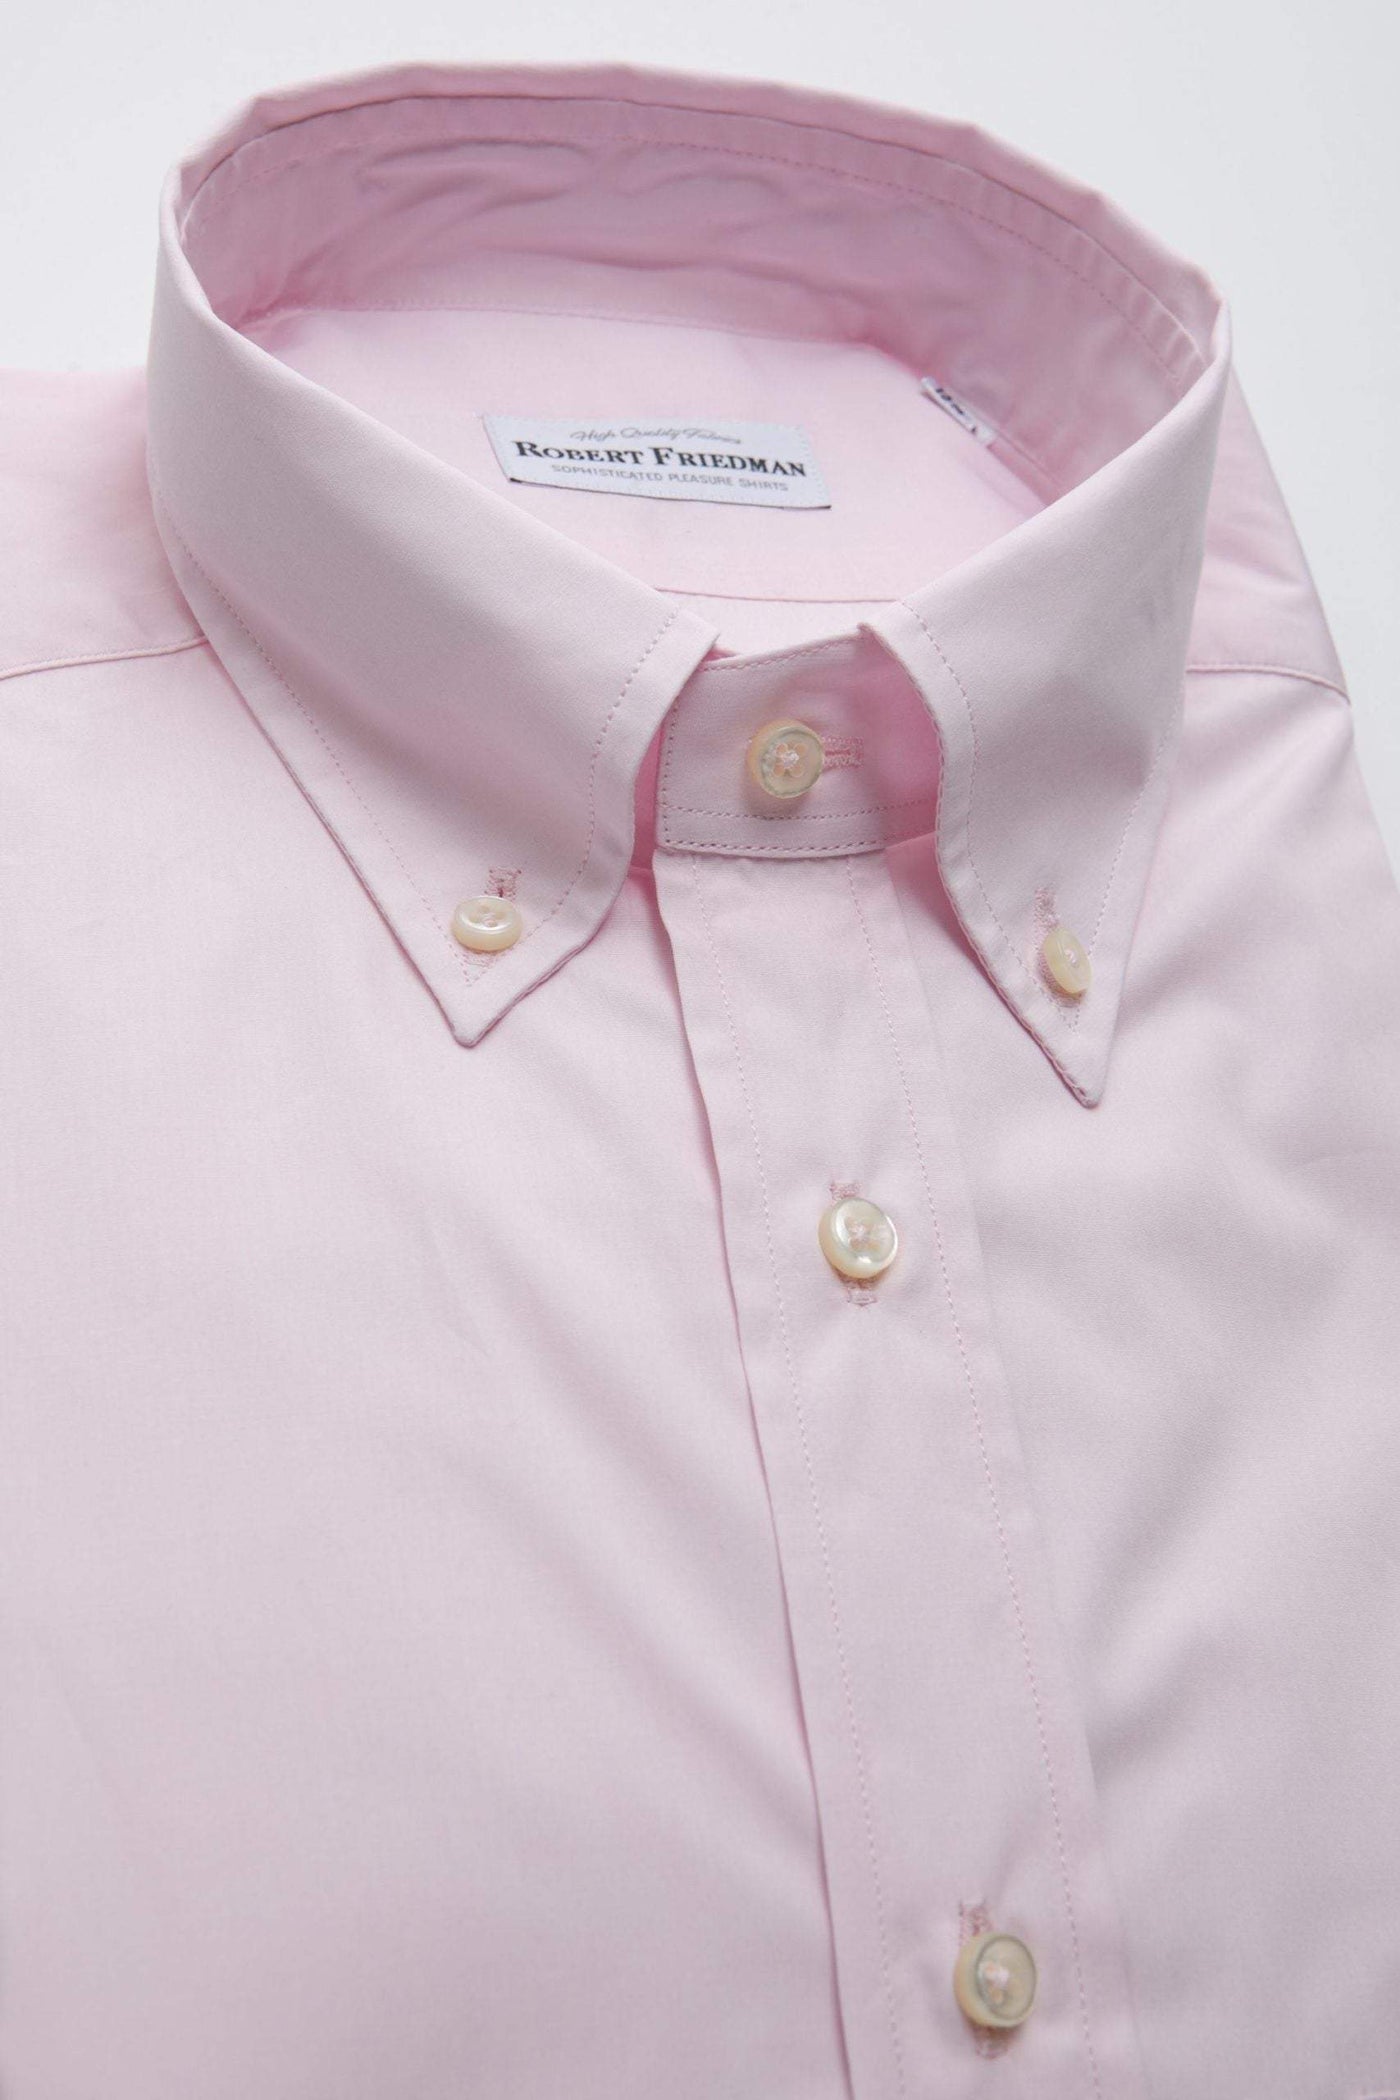 Robert Friedman Pink Cotton Shirt #men, feed-1, IT40 | M, IT41 | L, IT42 | XL, Pink, Robert Friedman, Shirts - Men - Clothing at SEYMAYKA